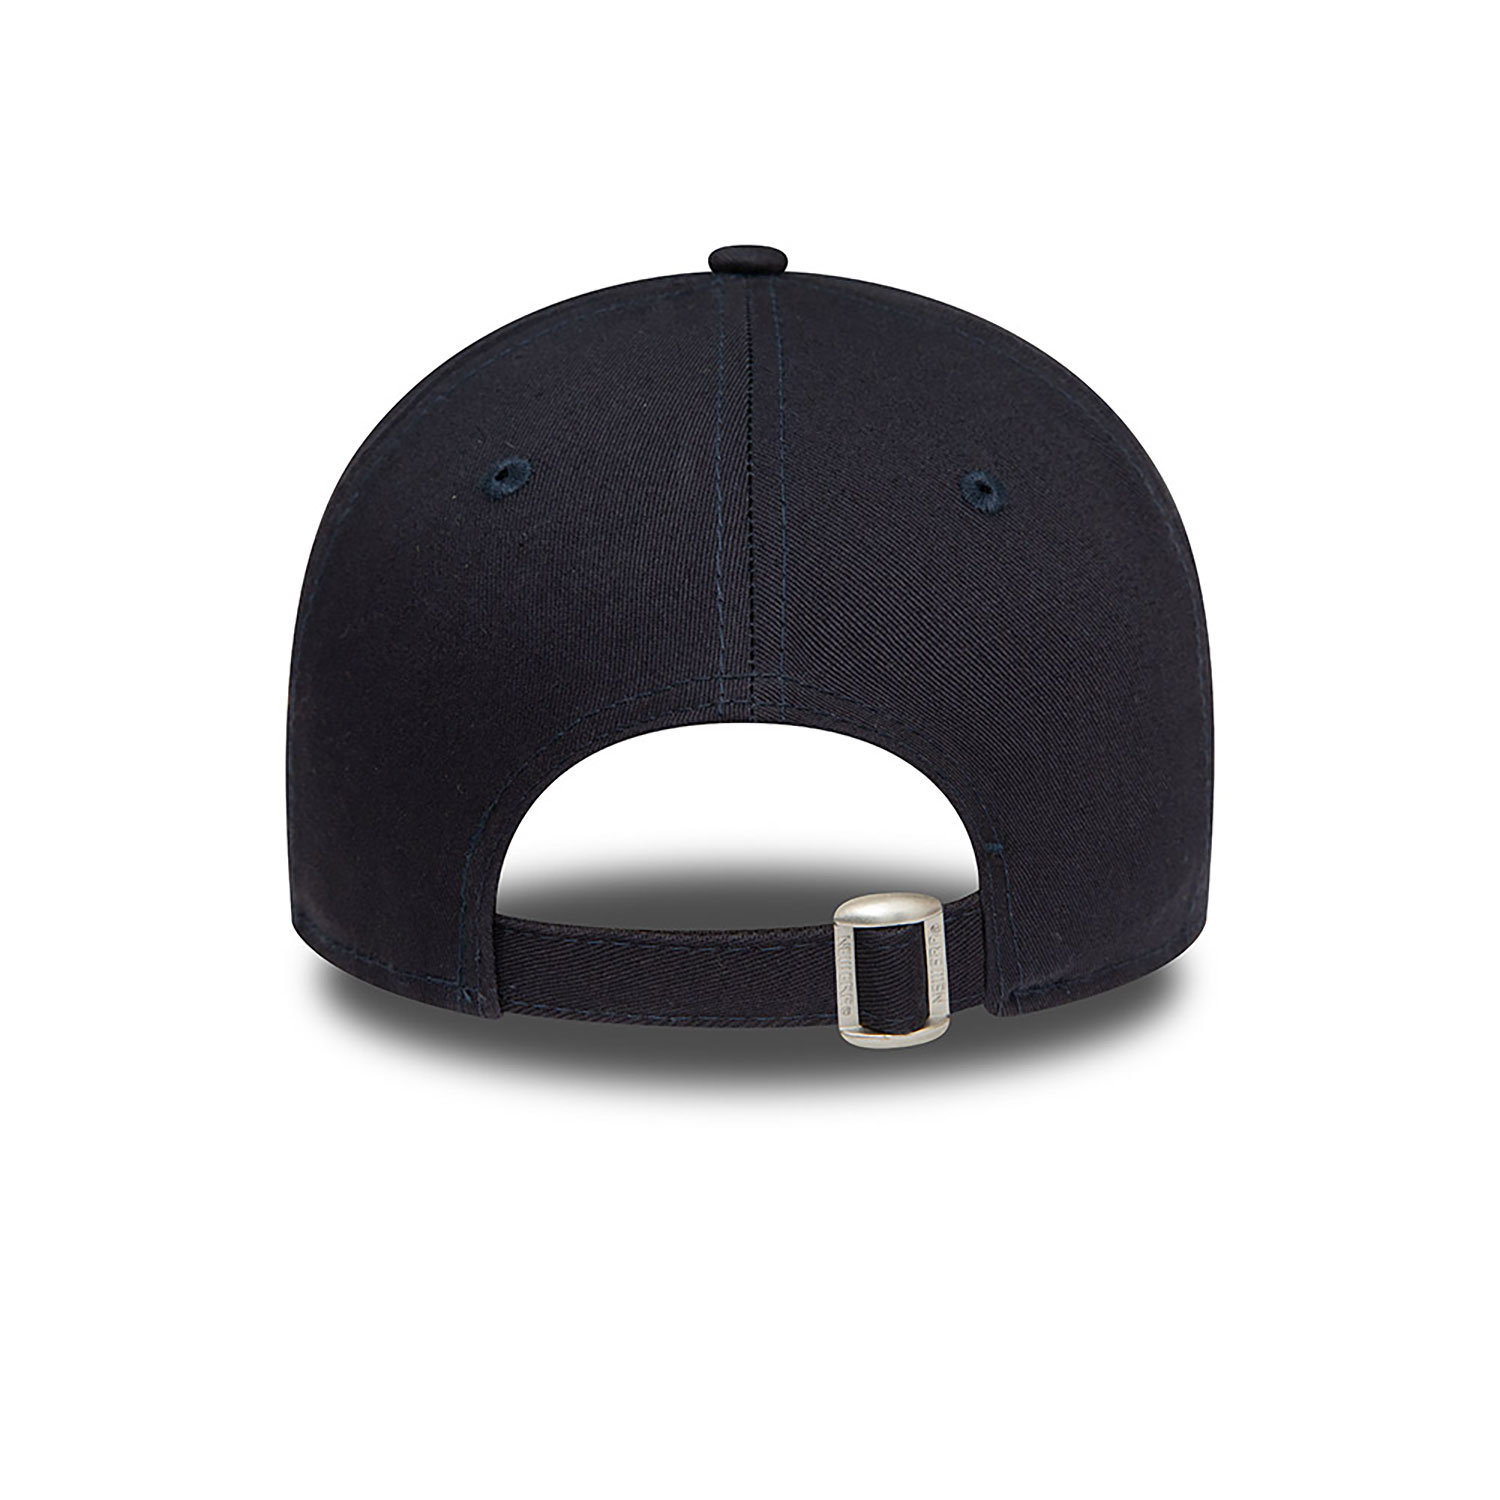 LA Dodgers League Essential Navy 9FORTY Adjustable Cap